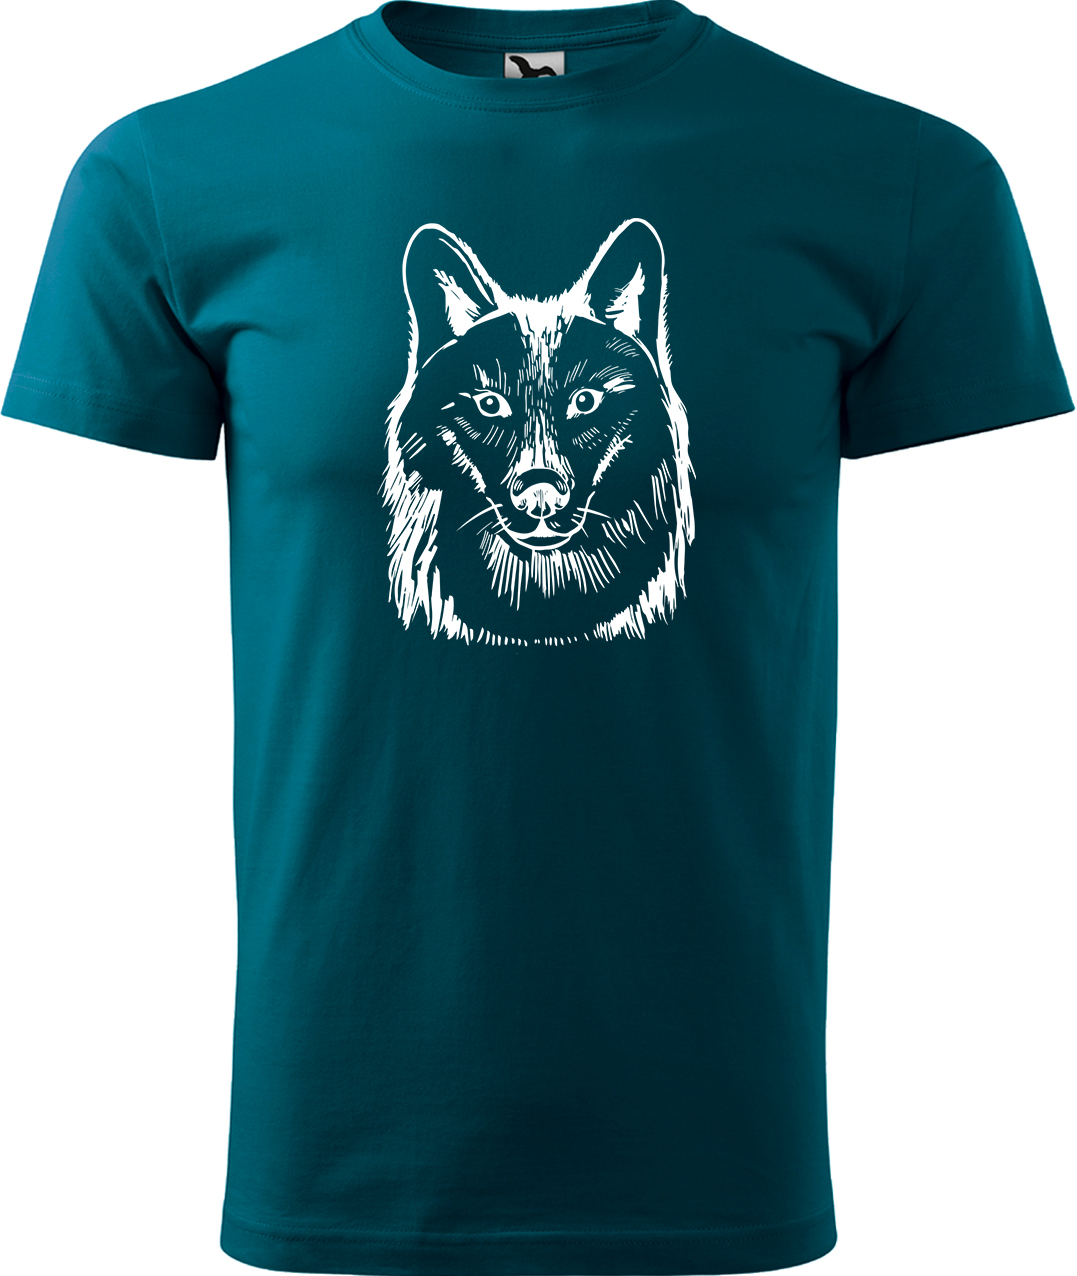 Pánské tričko s vlkem - Kresba vlka Velikost: S, Barva: Petrolejová (93), Střih: pánský